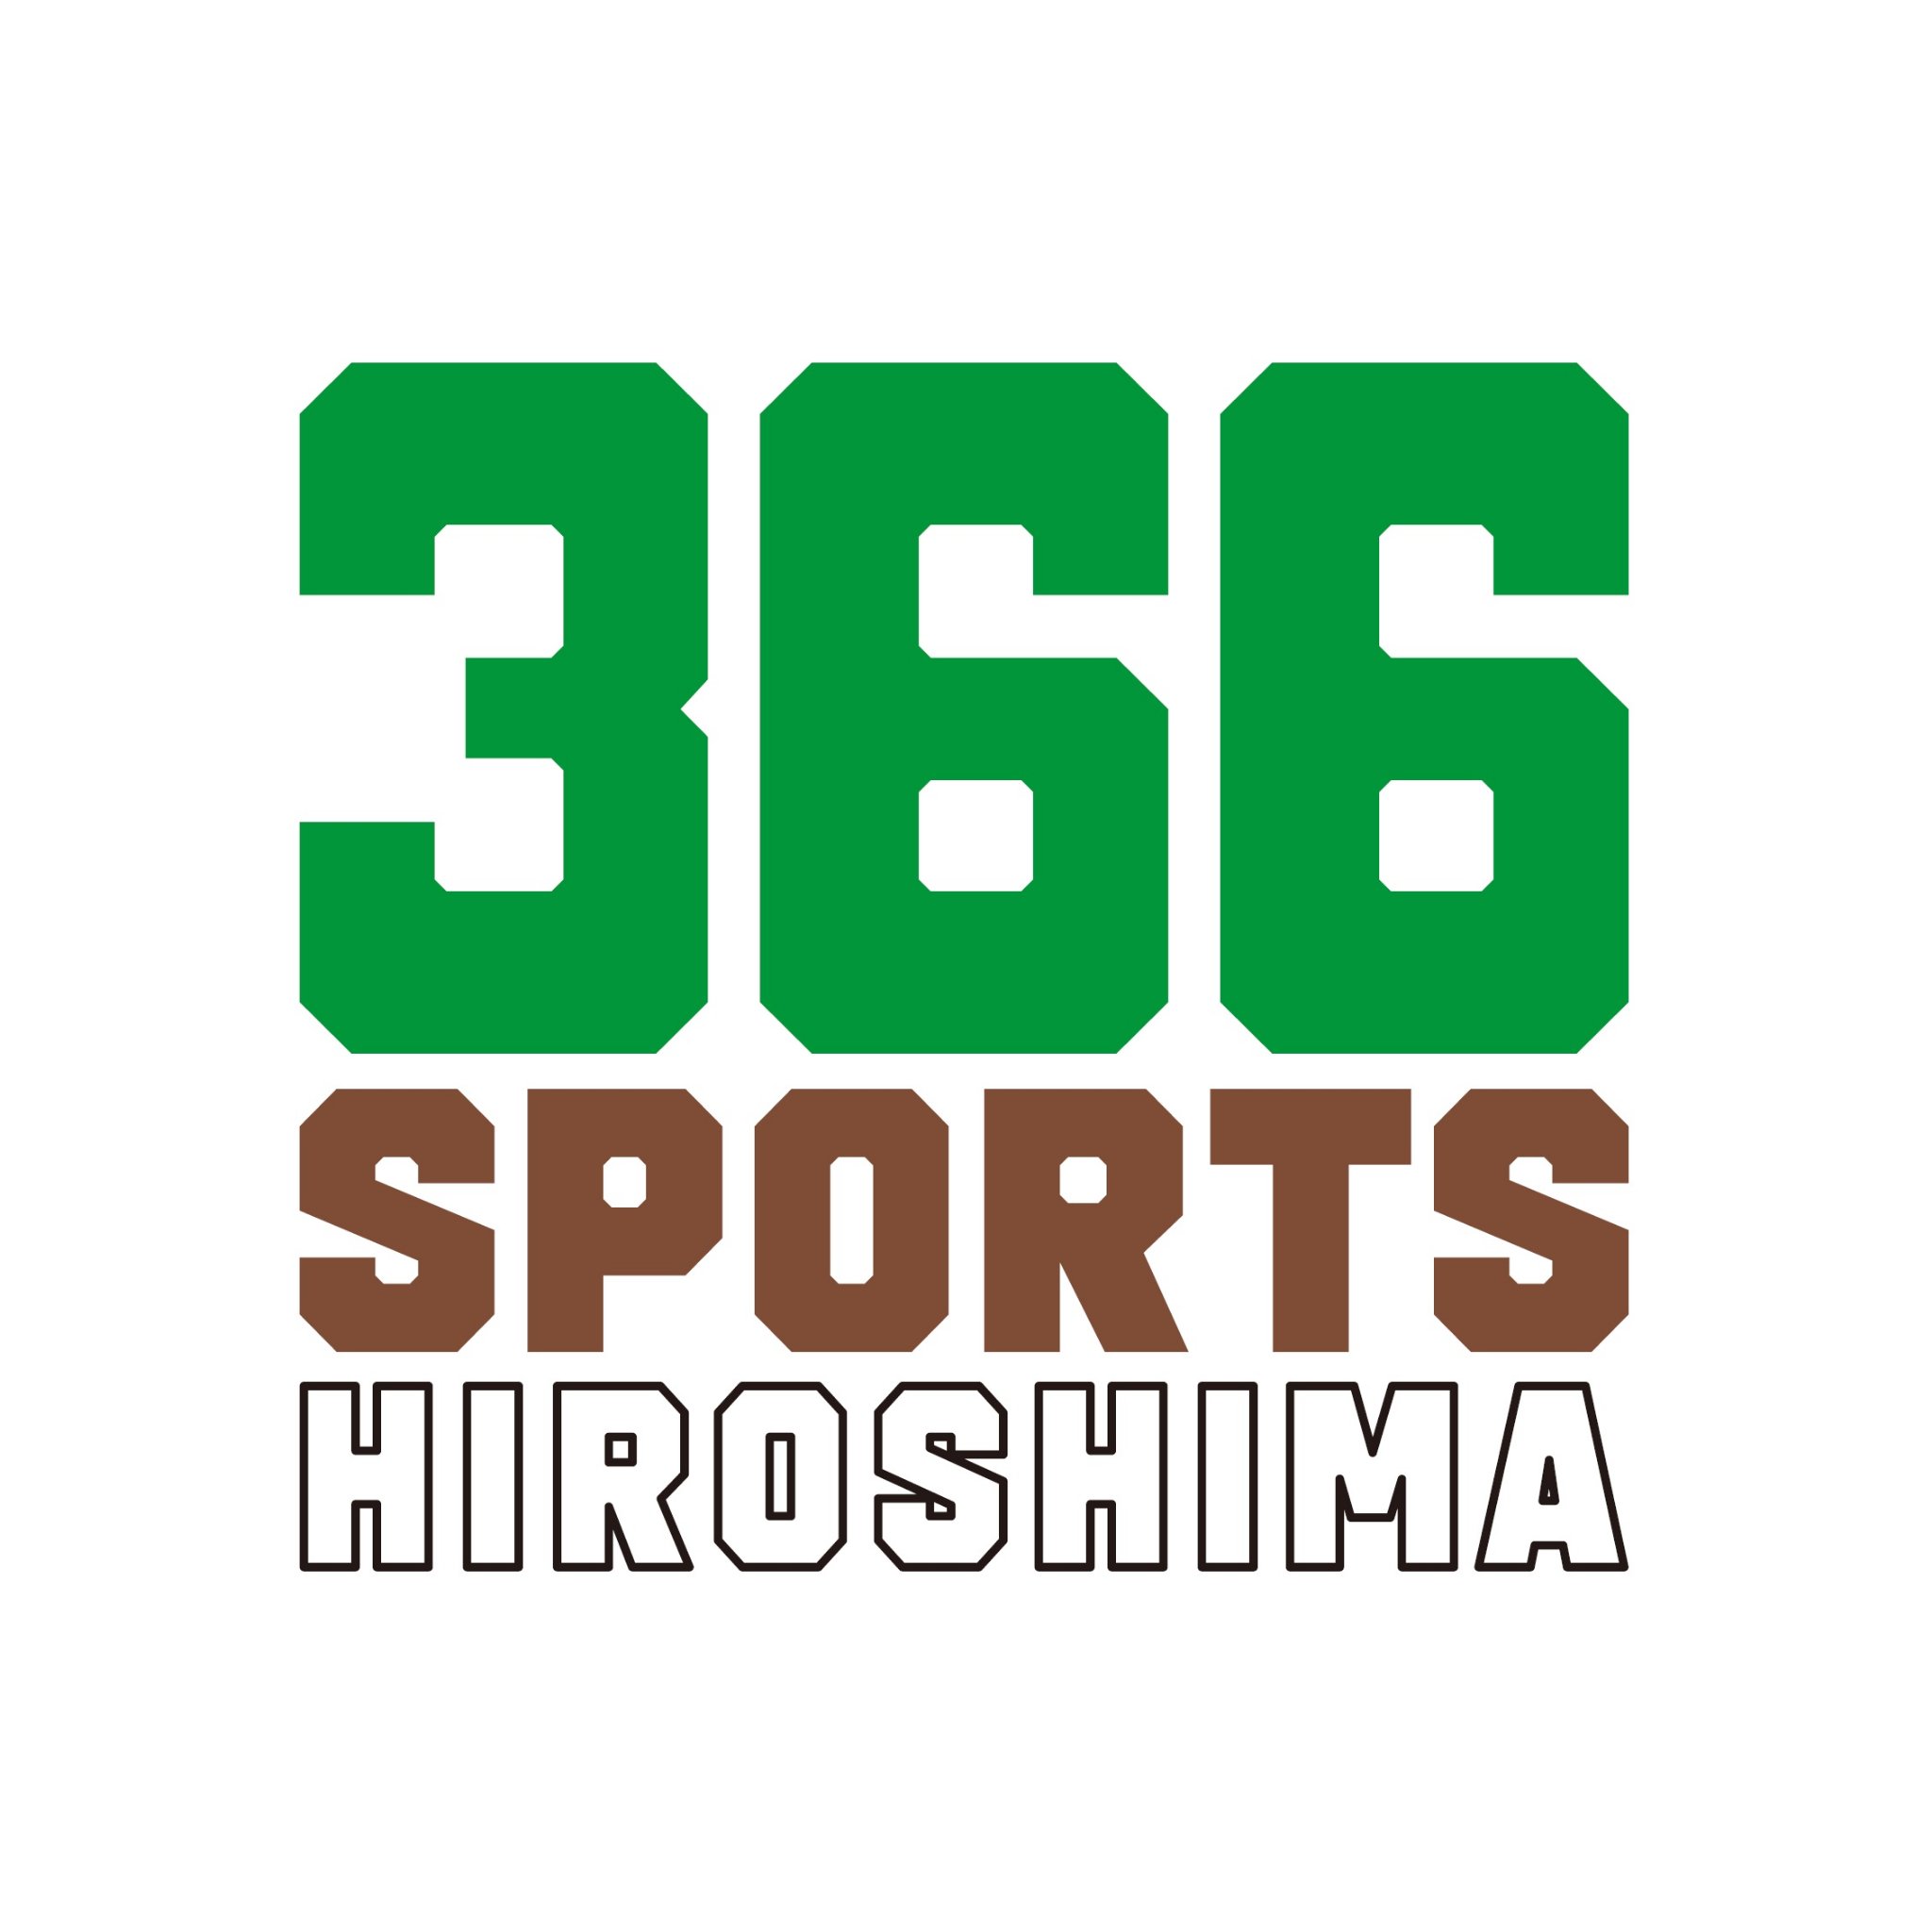 広島が育てたスポーツチームを1年を通して応援し、楽しむことができるお店です。
カープやサンフレッチェ、JTサンダーズ、ドラゴンフライズのグッズ、アンジュヴィオレ広島のグッズを販売中。
広島のスポーツの力をあなたに感じてほしい！THE OUTLETS HIROSHIMAの1階大垣書店内にあります！